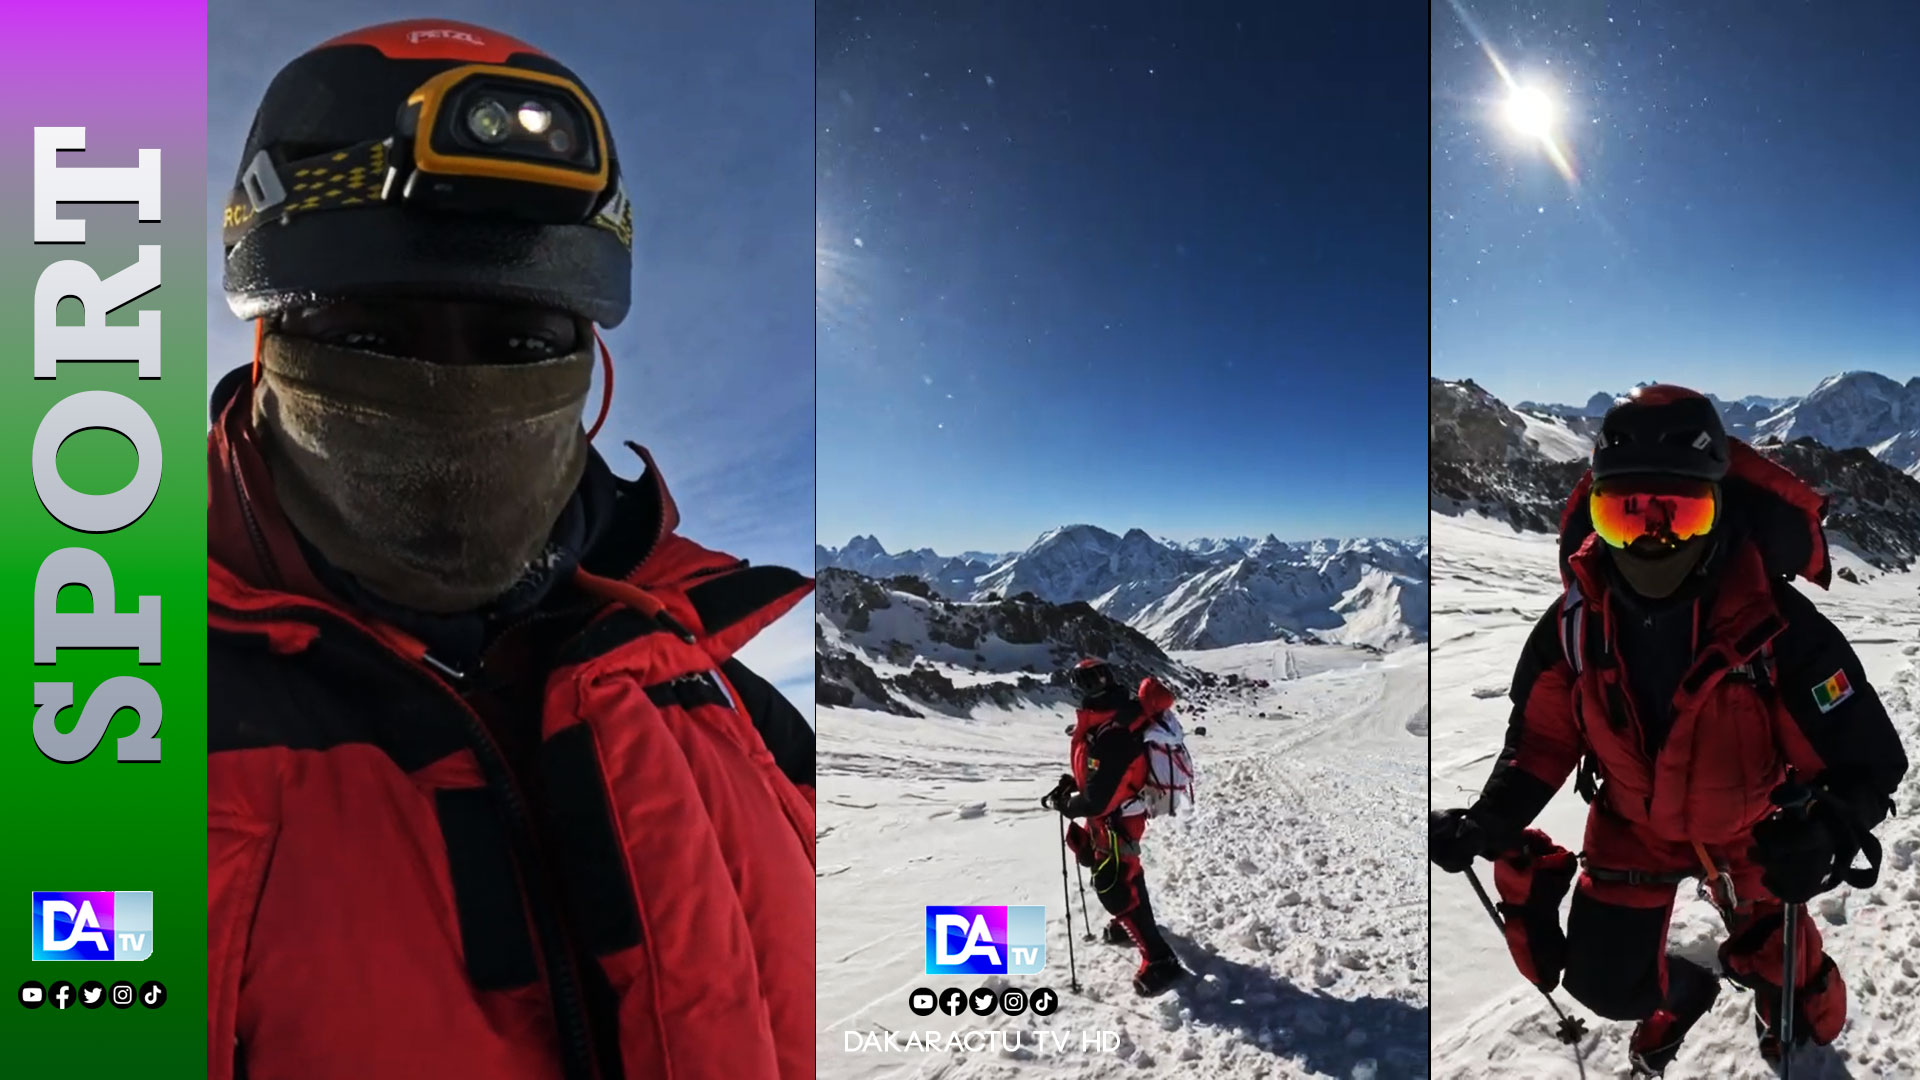 Mouhamed Rassoul Tounkara "sauve" son guide à moins de 200 m du sommet Mont- Elbrouz